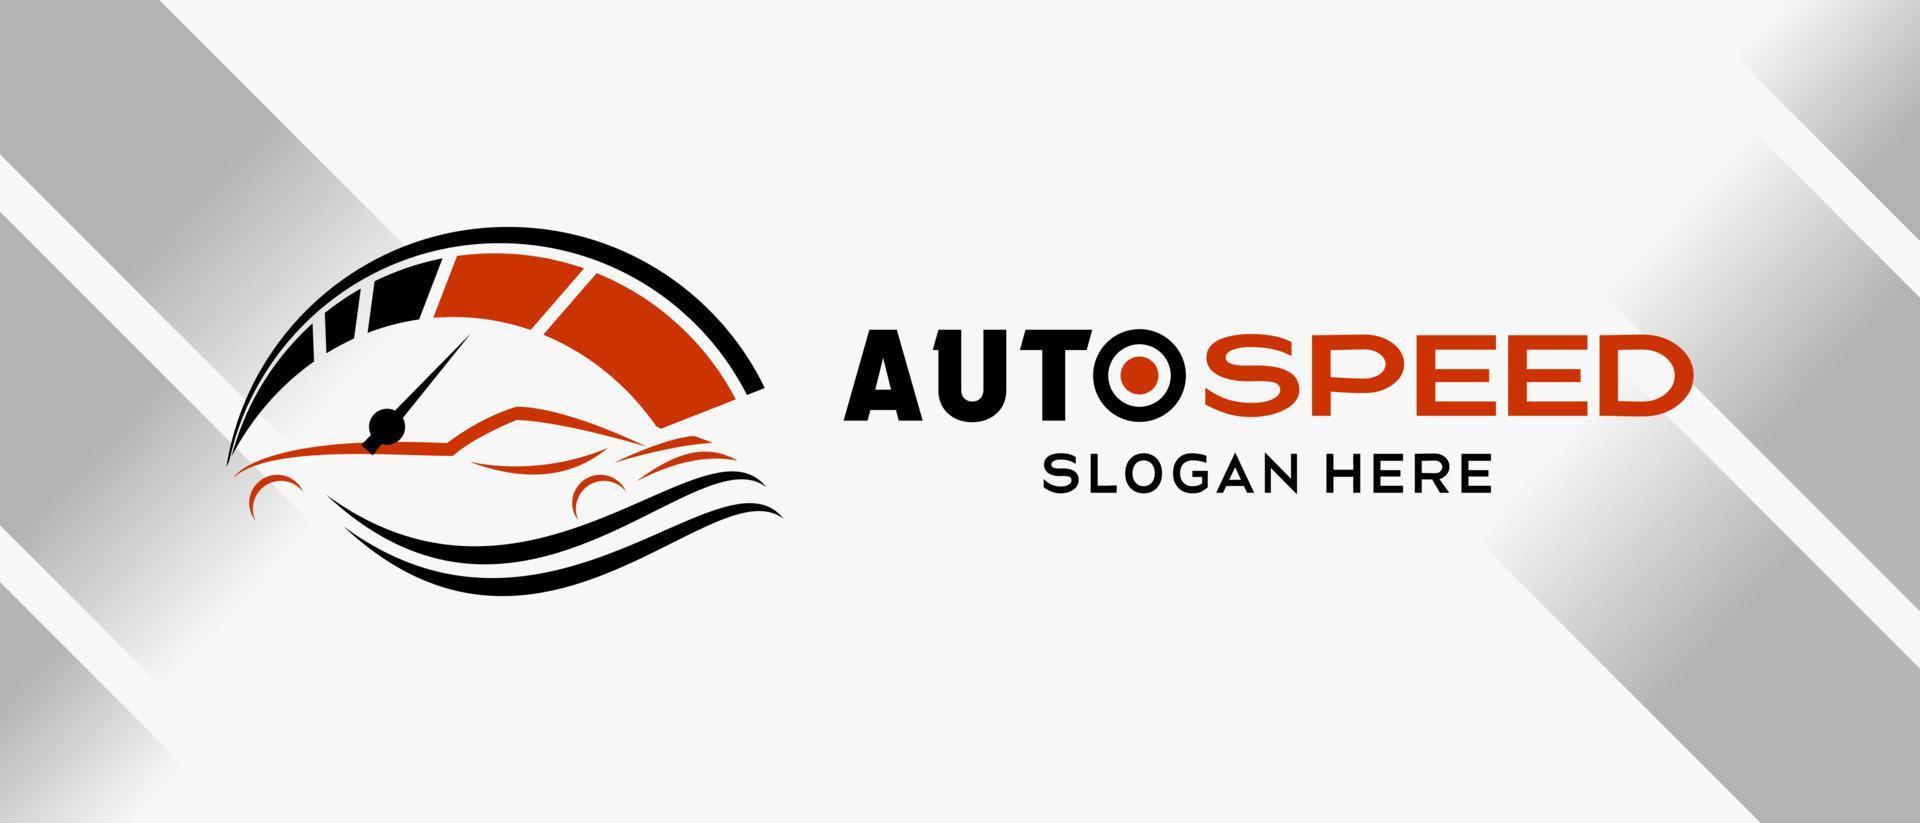 Automobil- und RPM-Auto-Logo-Design mit kreativem abstraktem Konzept. Premium-Logo-Illustrationsvektor für Automobile vektor